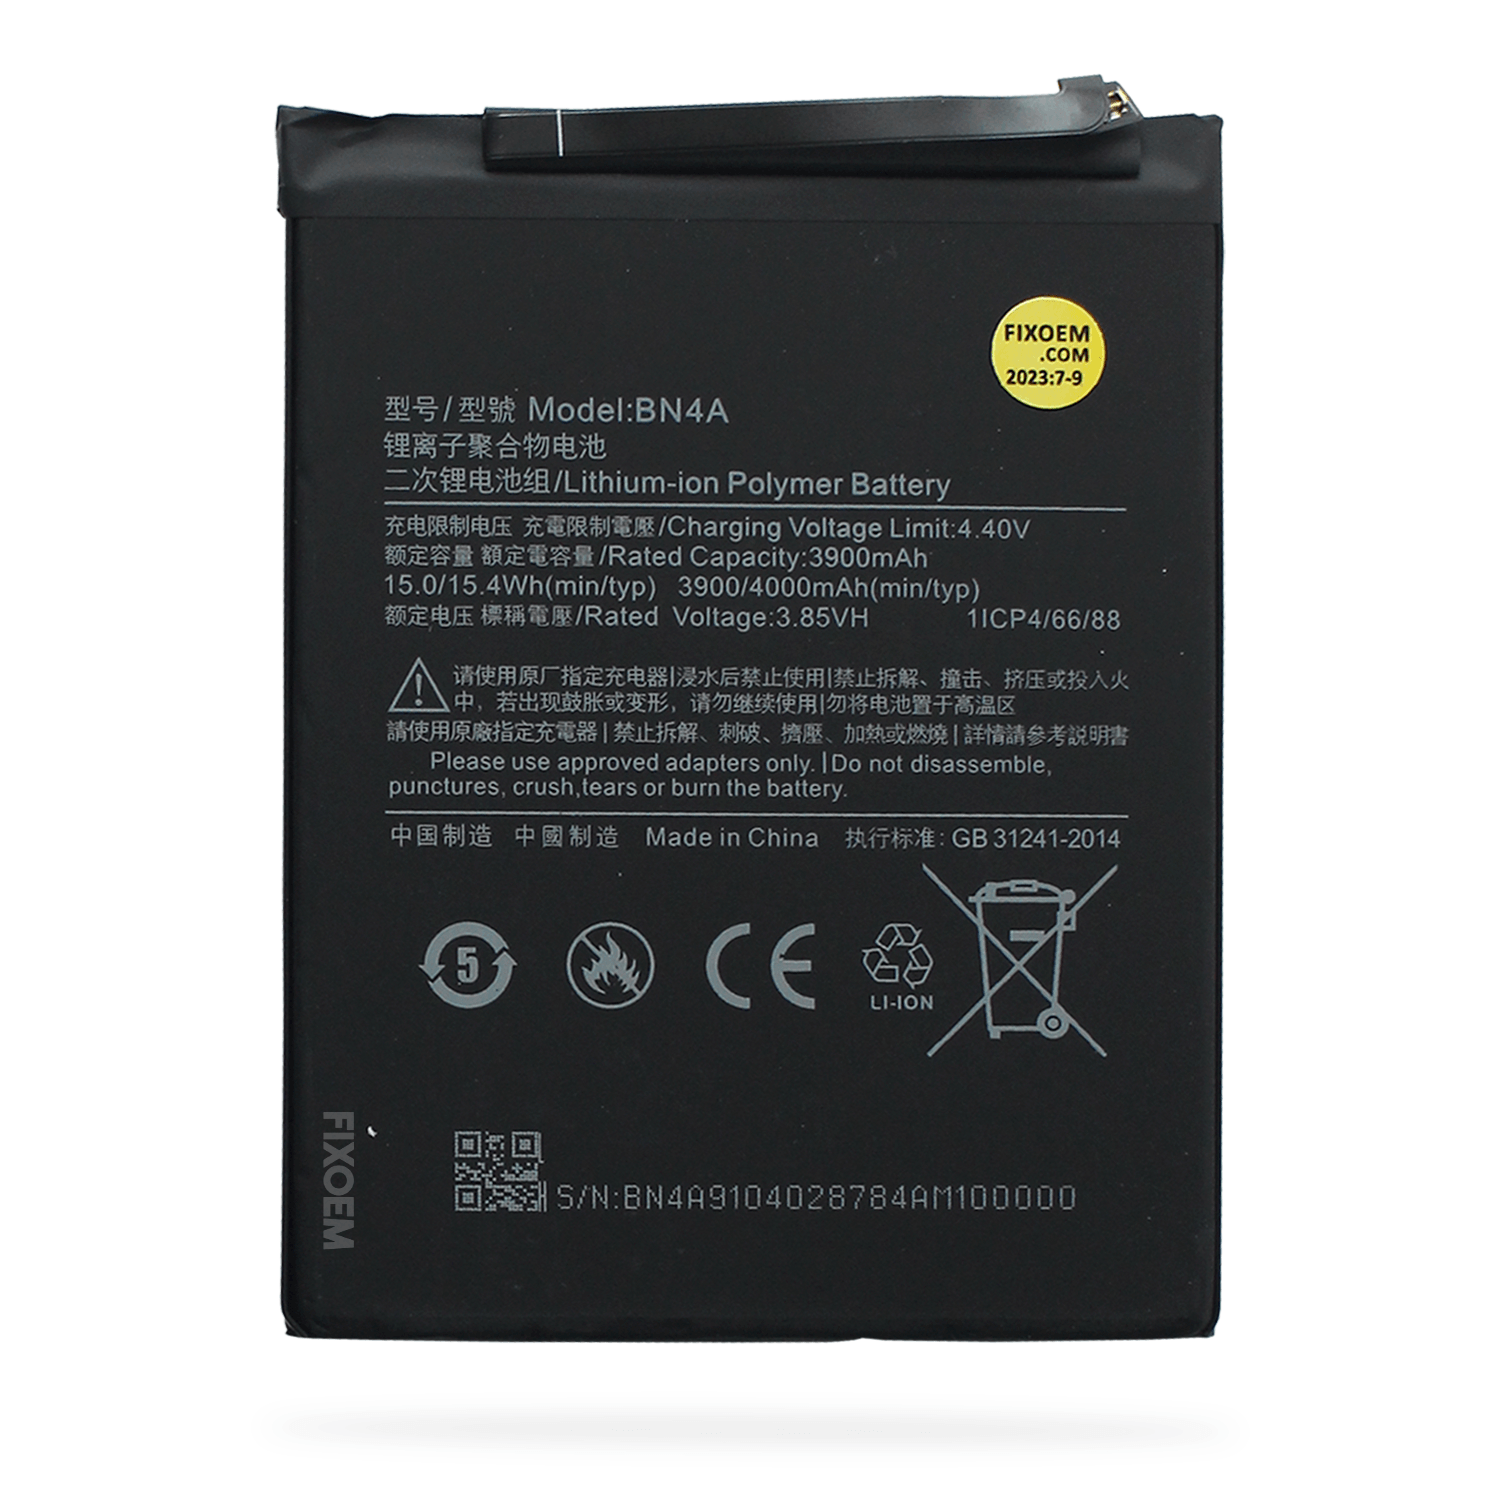 Bateria Xiaomi Redmi Note 7 M1901F7G M1901F7H M1901F7I Bn4A a solo $ 120.00 Refaccion y puestos celulares, refurbish y microelectronica.- FixOEM